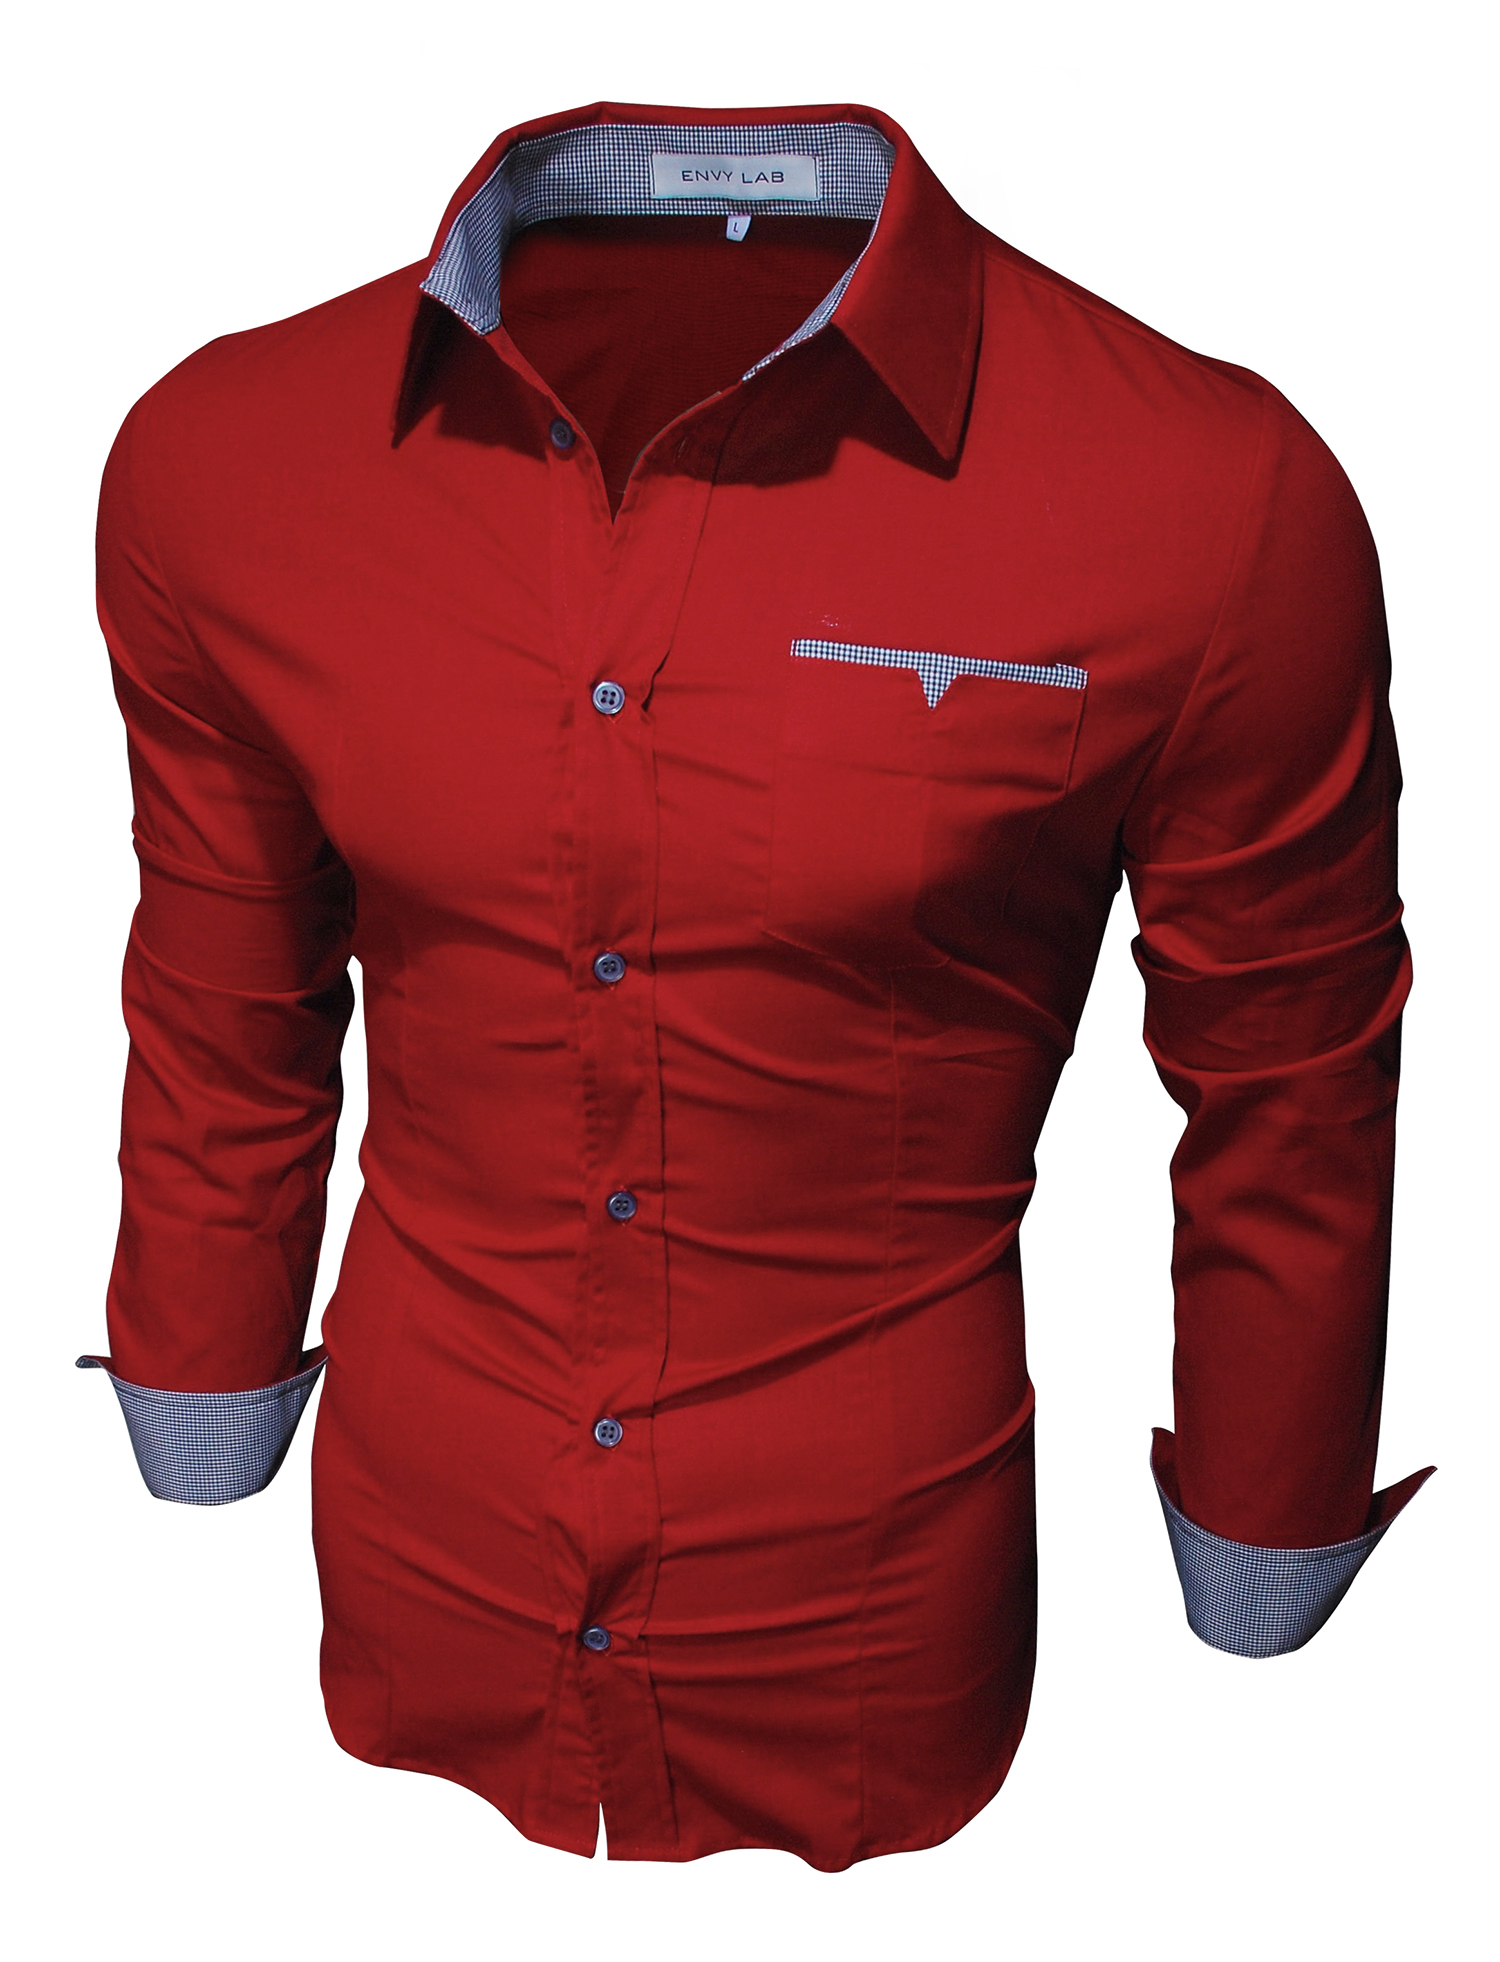 картинка товара рубашка red neck в магазине Envy LAB